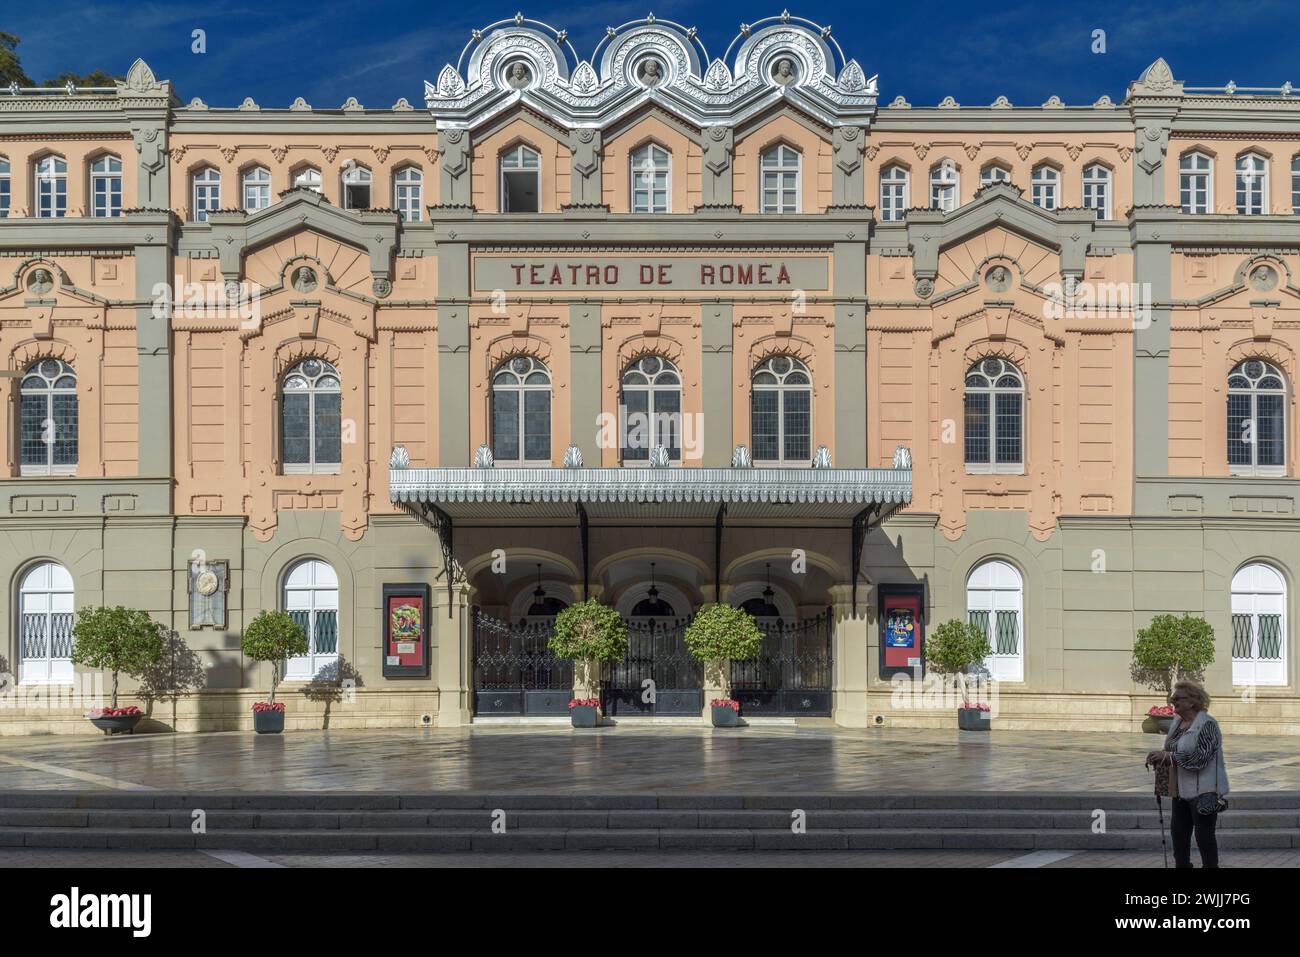 Théâtre Romea à Murcie, le théâtre principal de la région et l'un des plus importants d'Espagne. monument du xixe siècle. Inauguration de la reine Elizabeth II. Banque D'Images